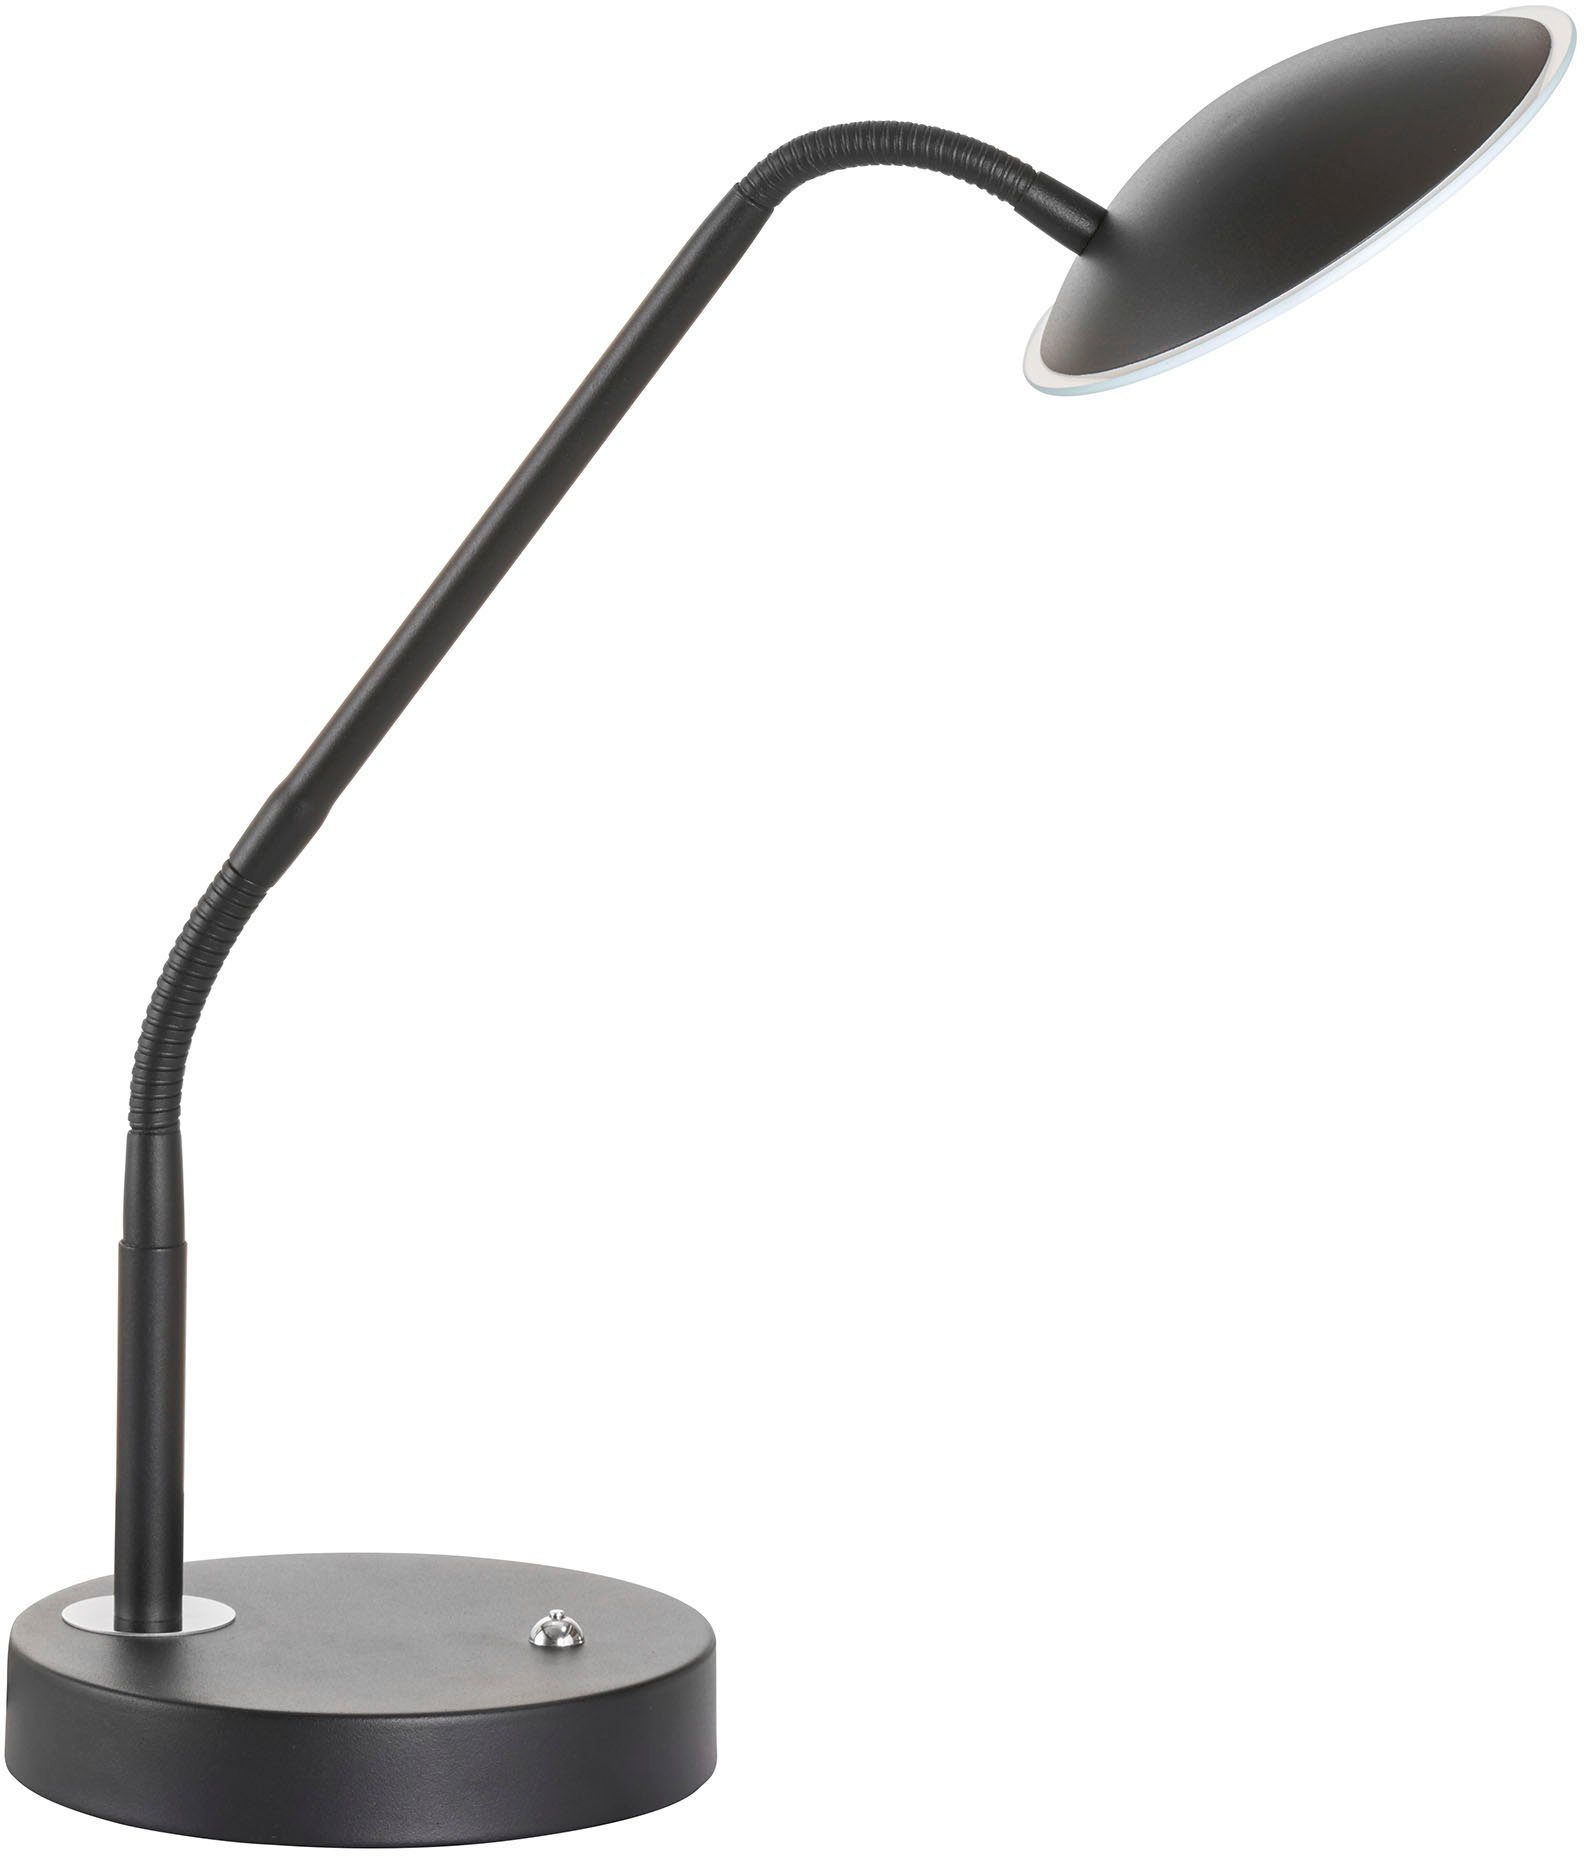 FISCHER & HONSEL Stehlampe Tallri, LED fest integriert, langlebige LED, dimmbar